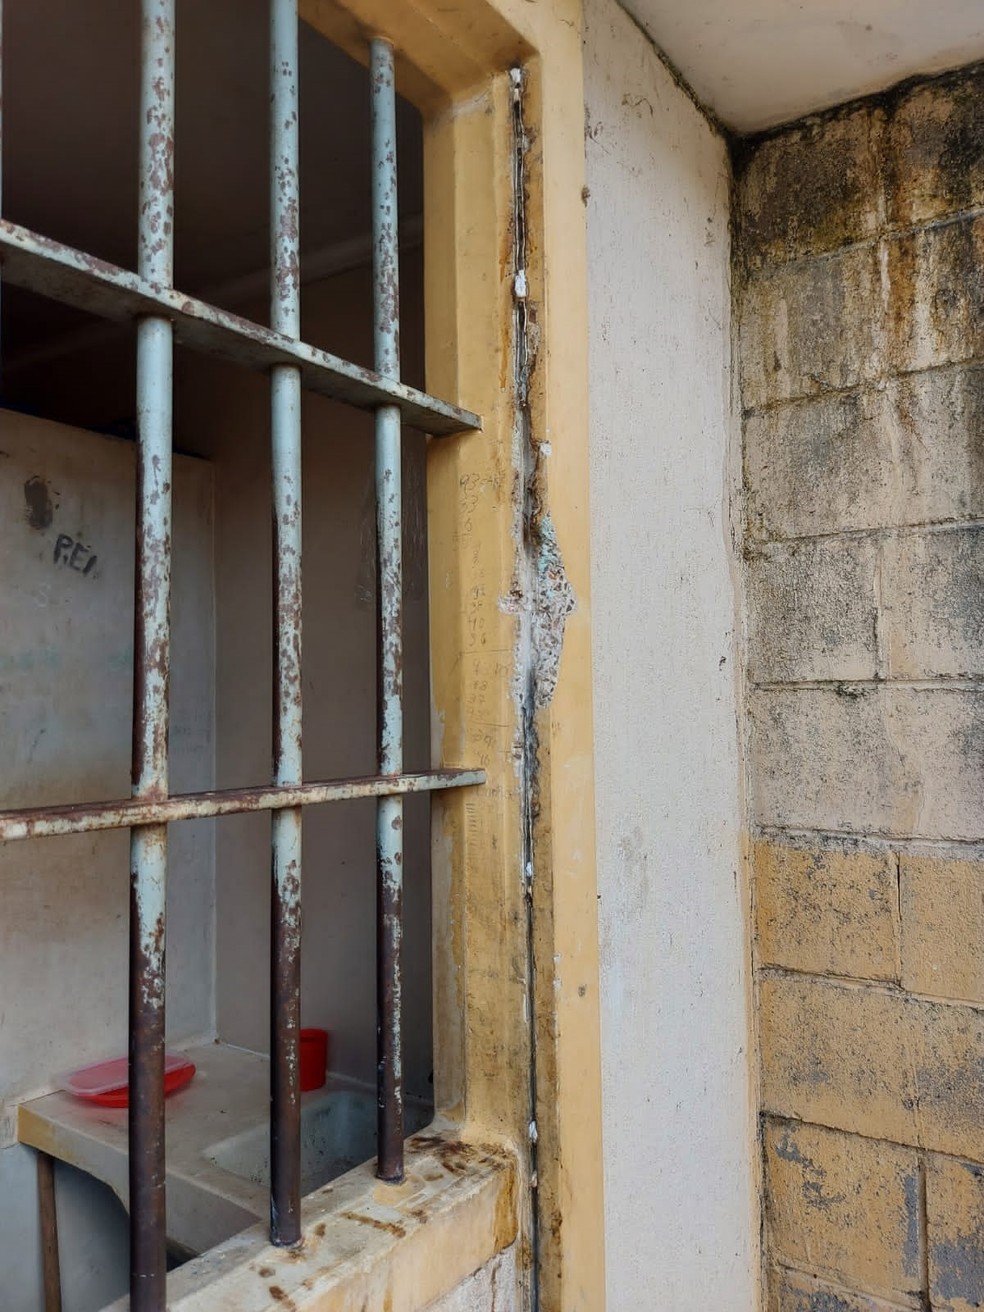 Polícia Penal de Alagoas identifica que materiais foram arrancados de selas para fabricação de armas artesanais no Complexo Penitenciário de Maceió — Foto: Polícia Penal de Alagoas